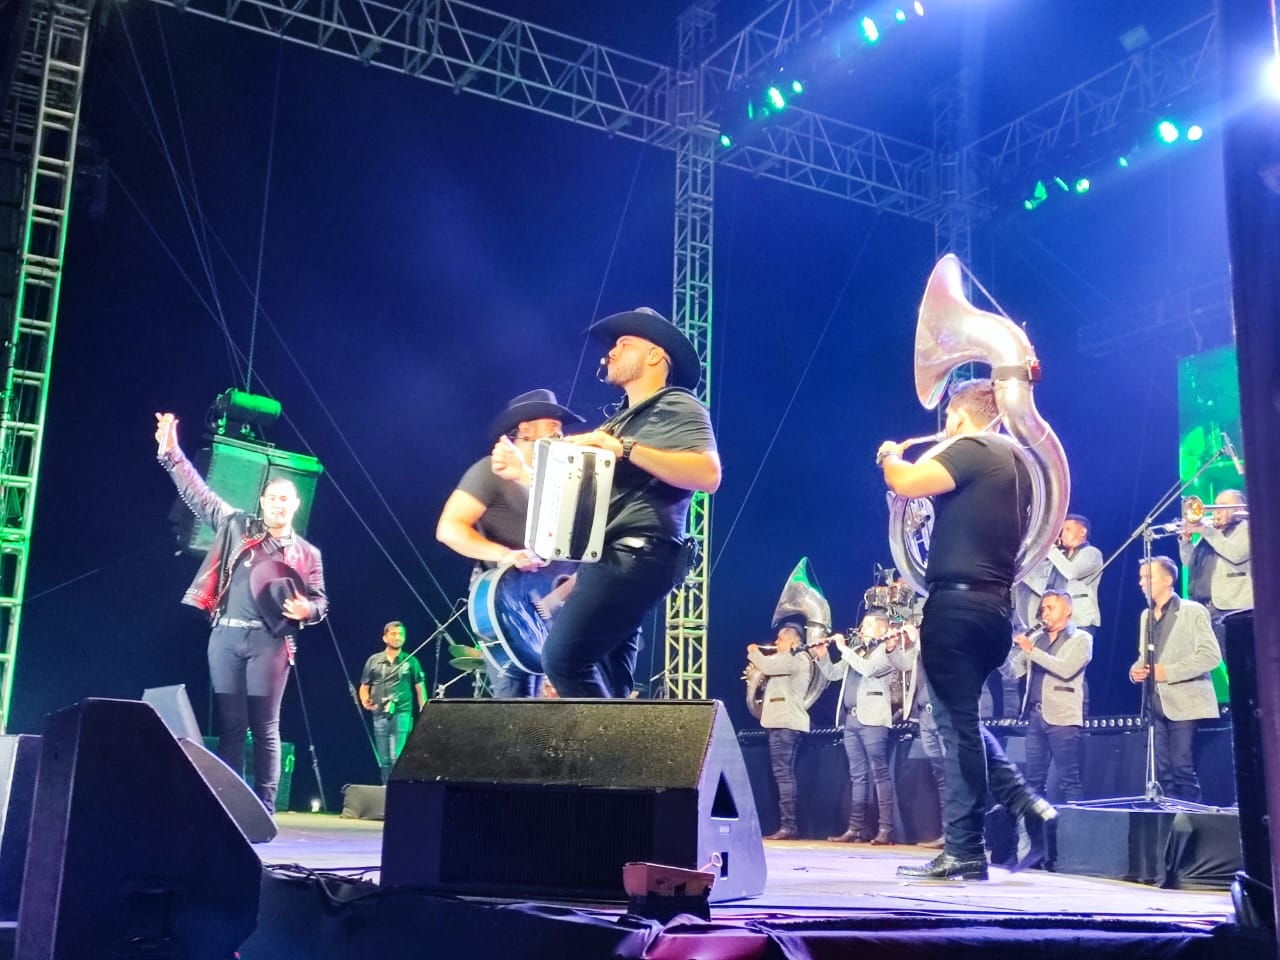 Carnaval de Progreso: Calibre 50 regresa con su música al puerto